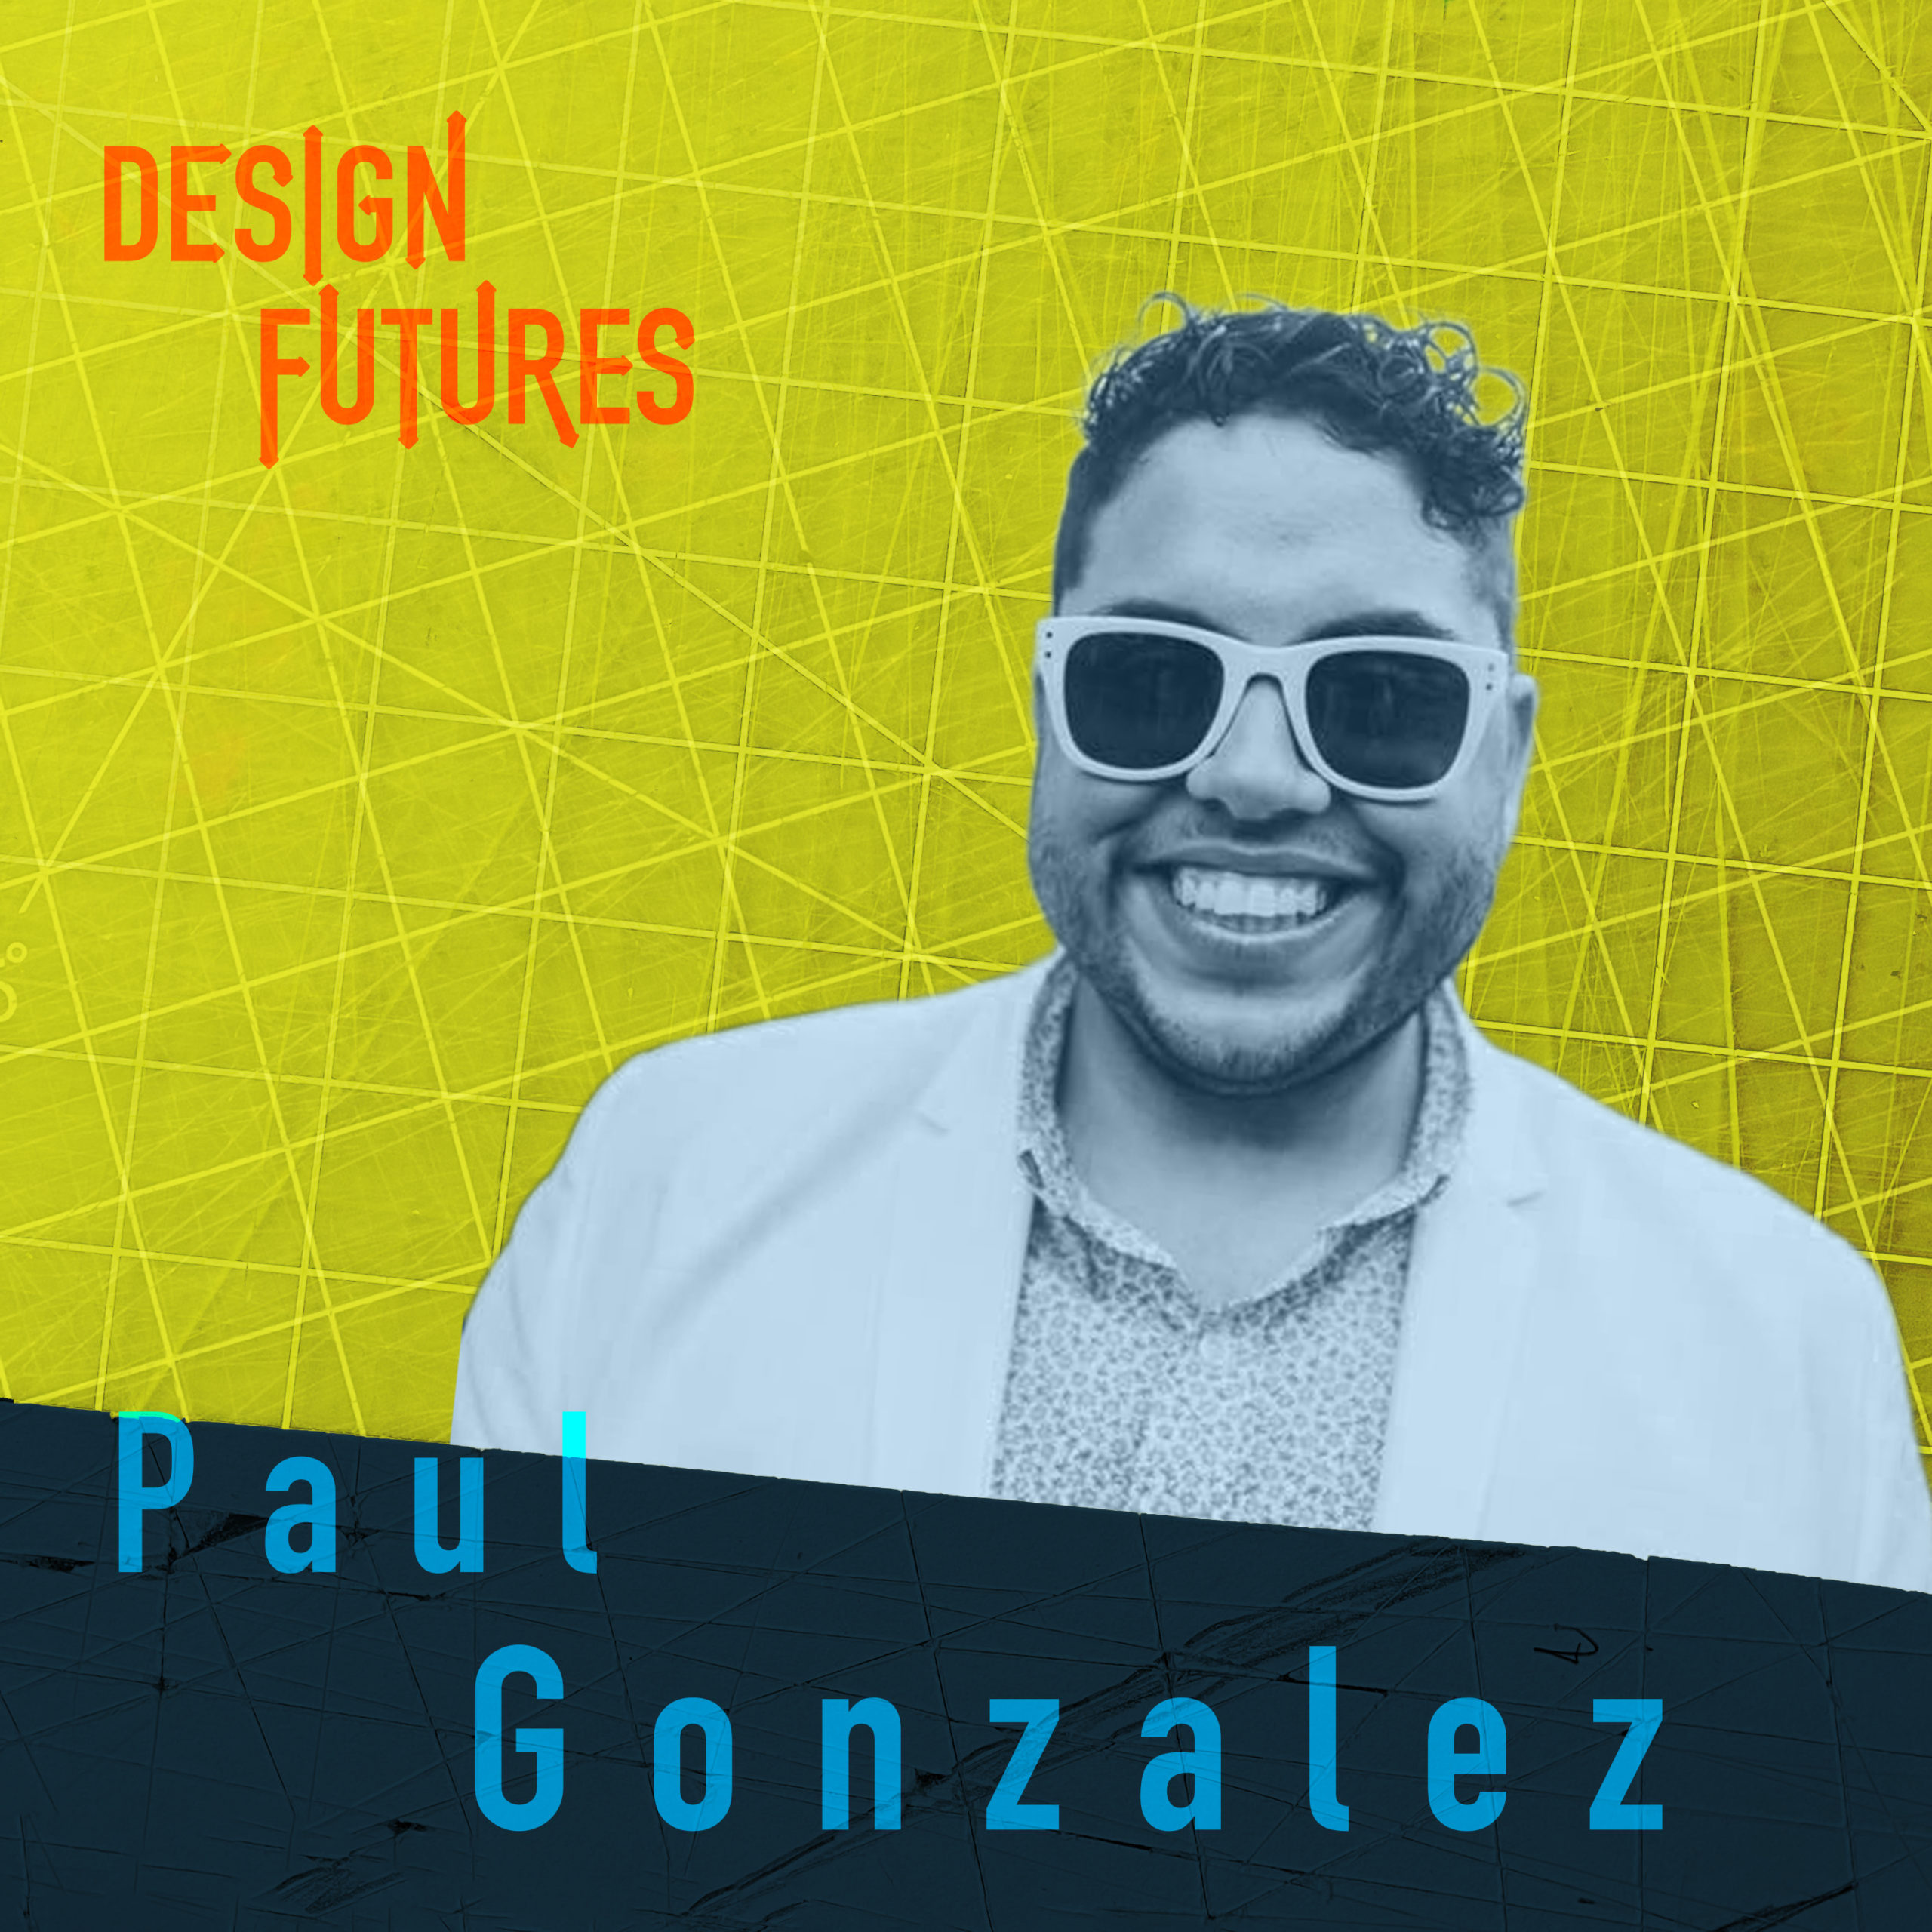 Paul Gonzalez